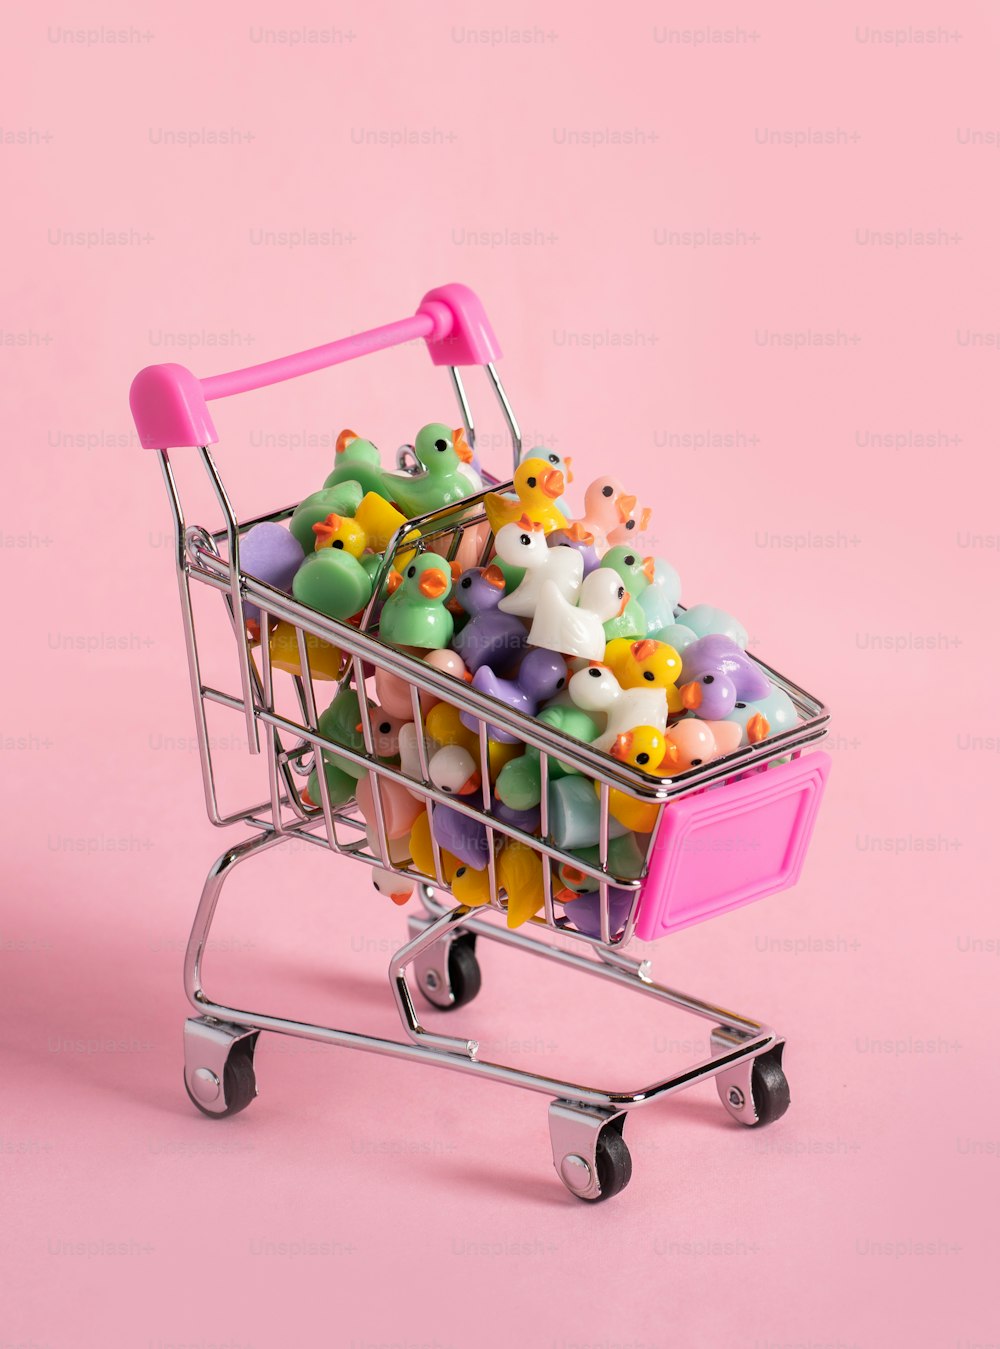 Un carrito de compras lleno de muchos juguetes pequeños